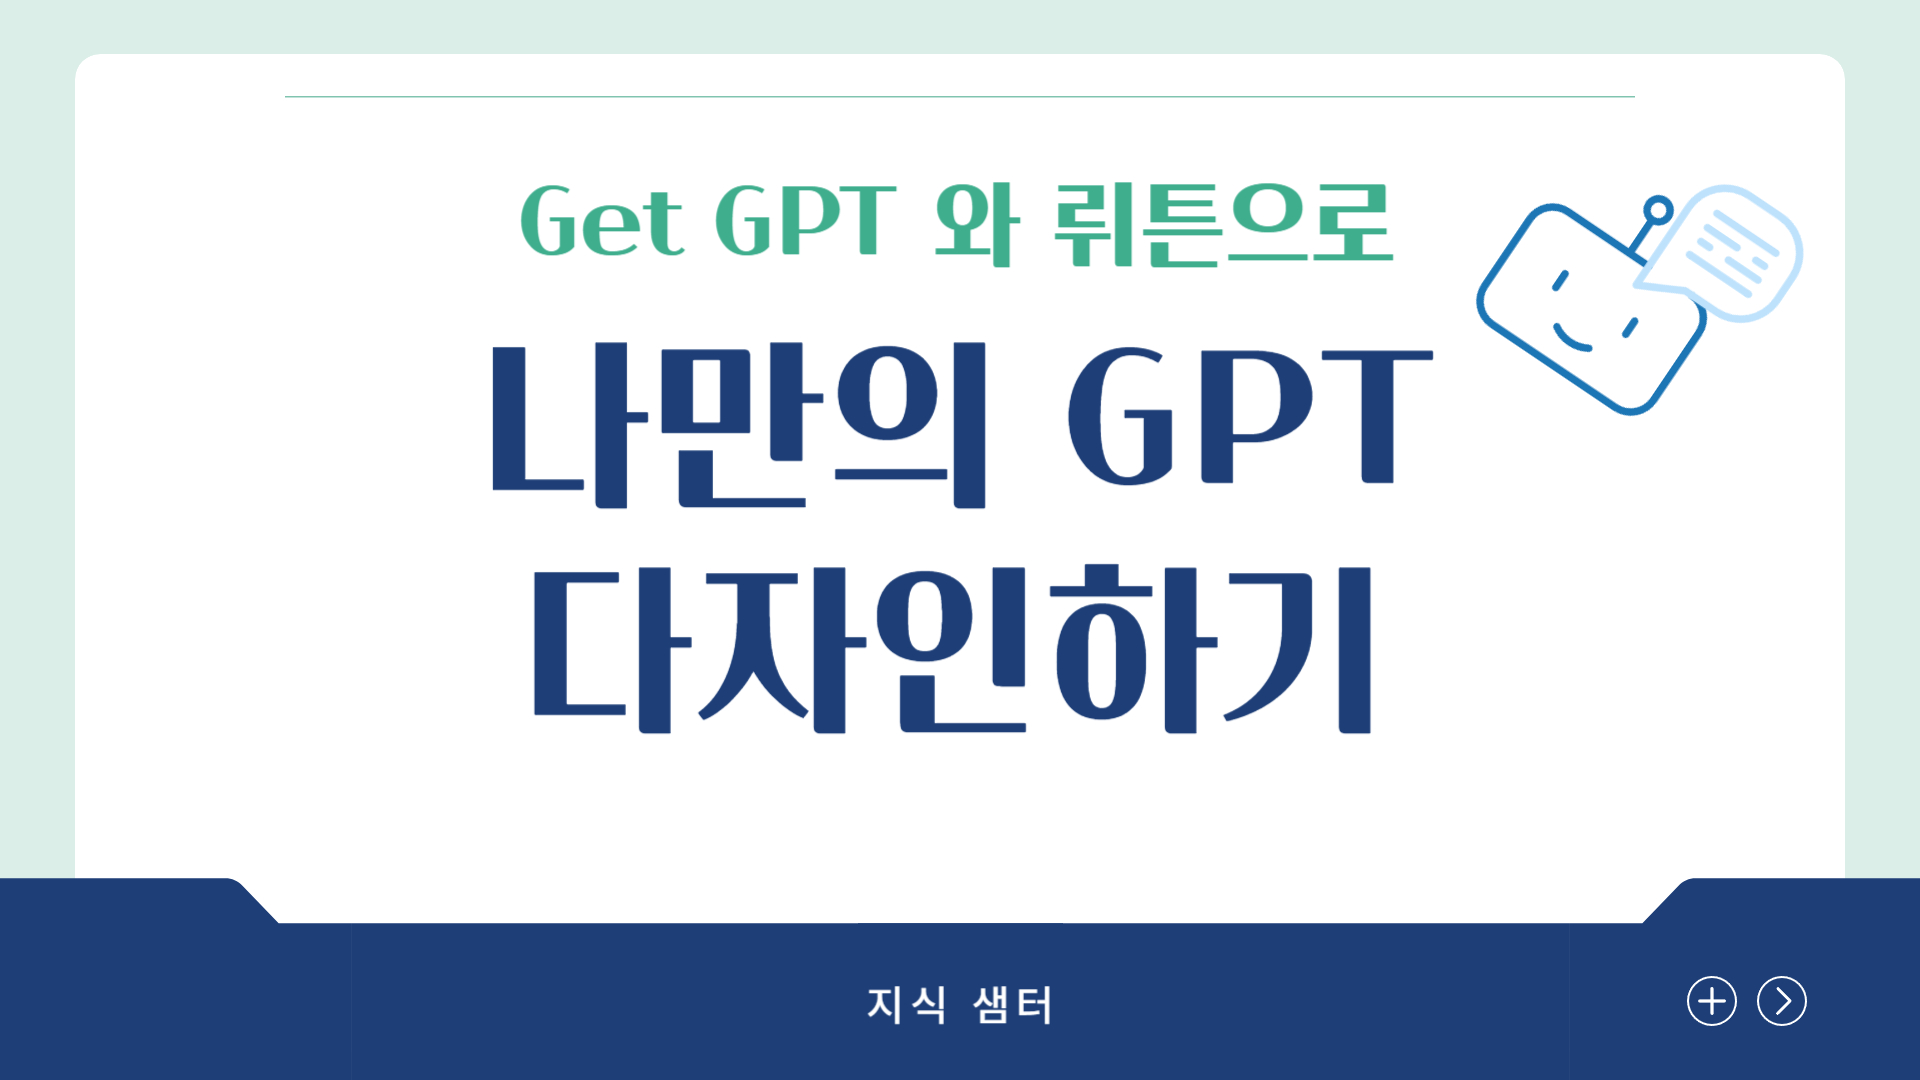 Get GPT, 뤼튼으로 나만의 GPT 만들기(1기)